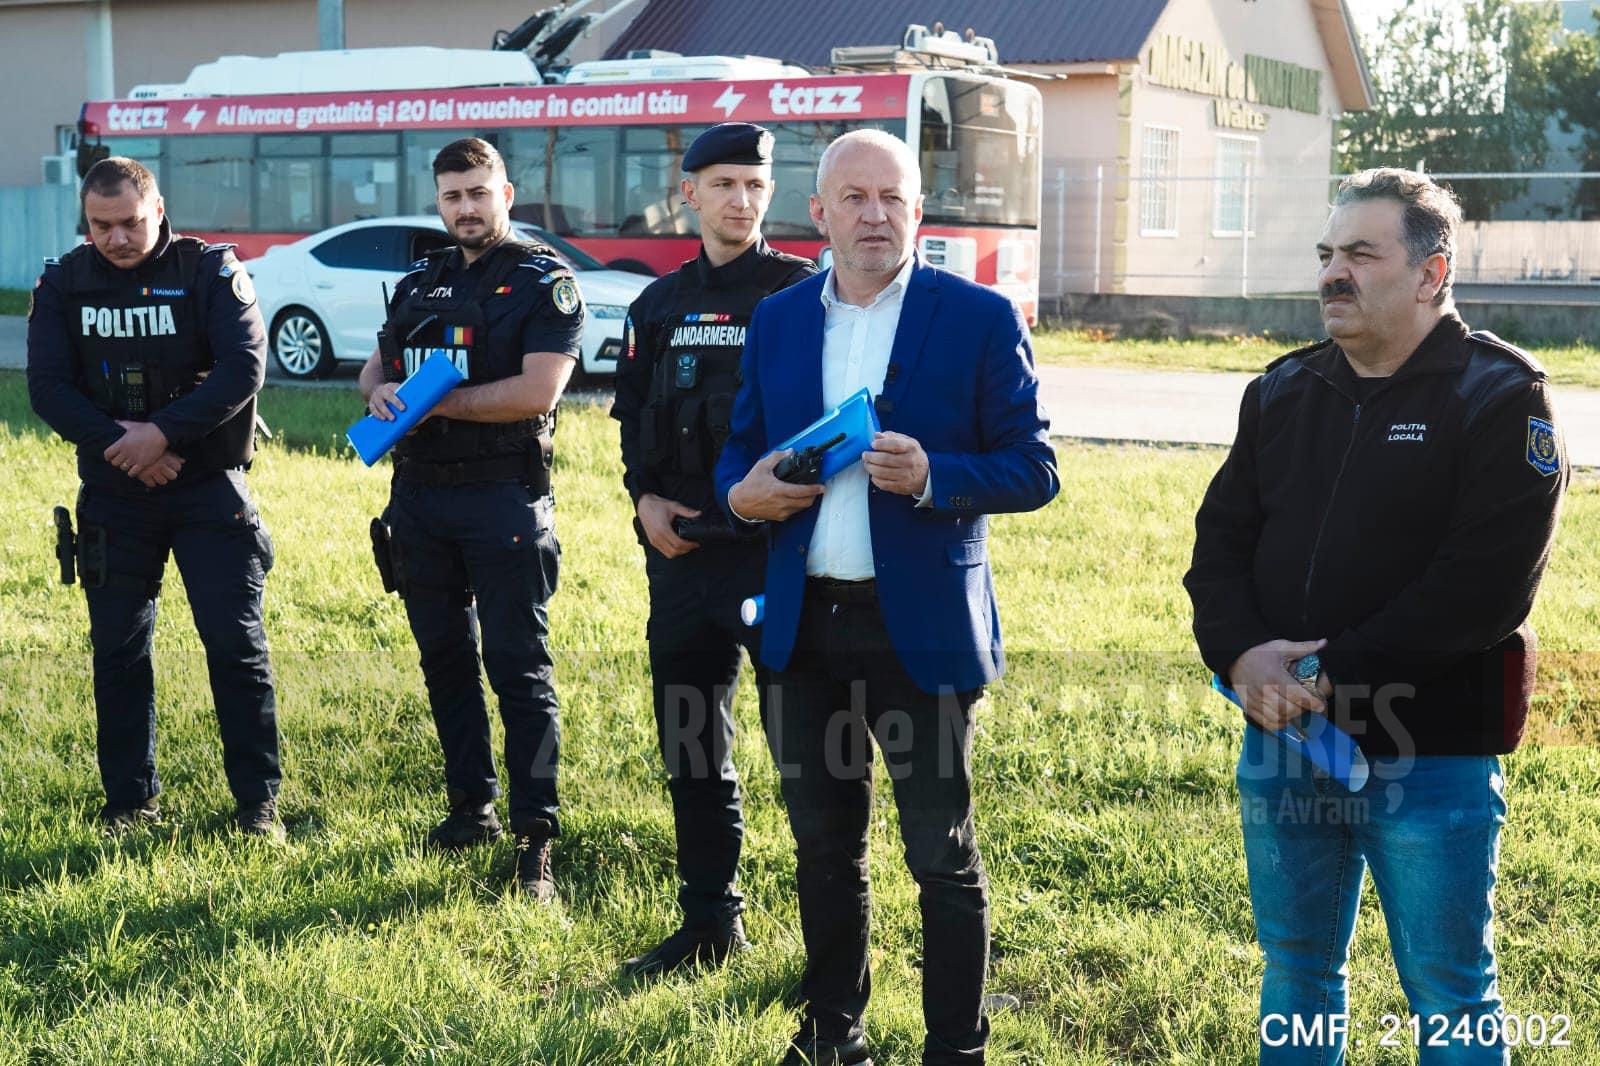 Doru Dăncuș, primarul interimar al municipiului Baia Mare: ”Am început în forță demolarea așezămintelor informale, ilegale din Baia Mare. Am dat startul pe Pirită și continuăm!”